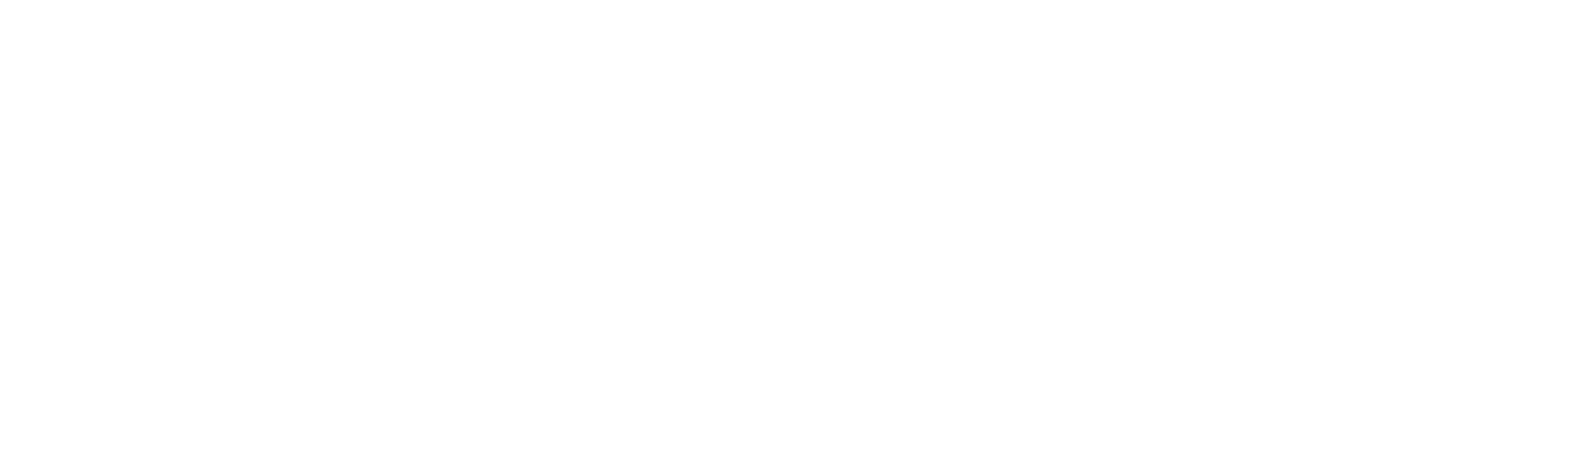 Phillips Edison & Company logo pour fonds sombres (PNG transparent)